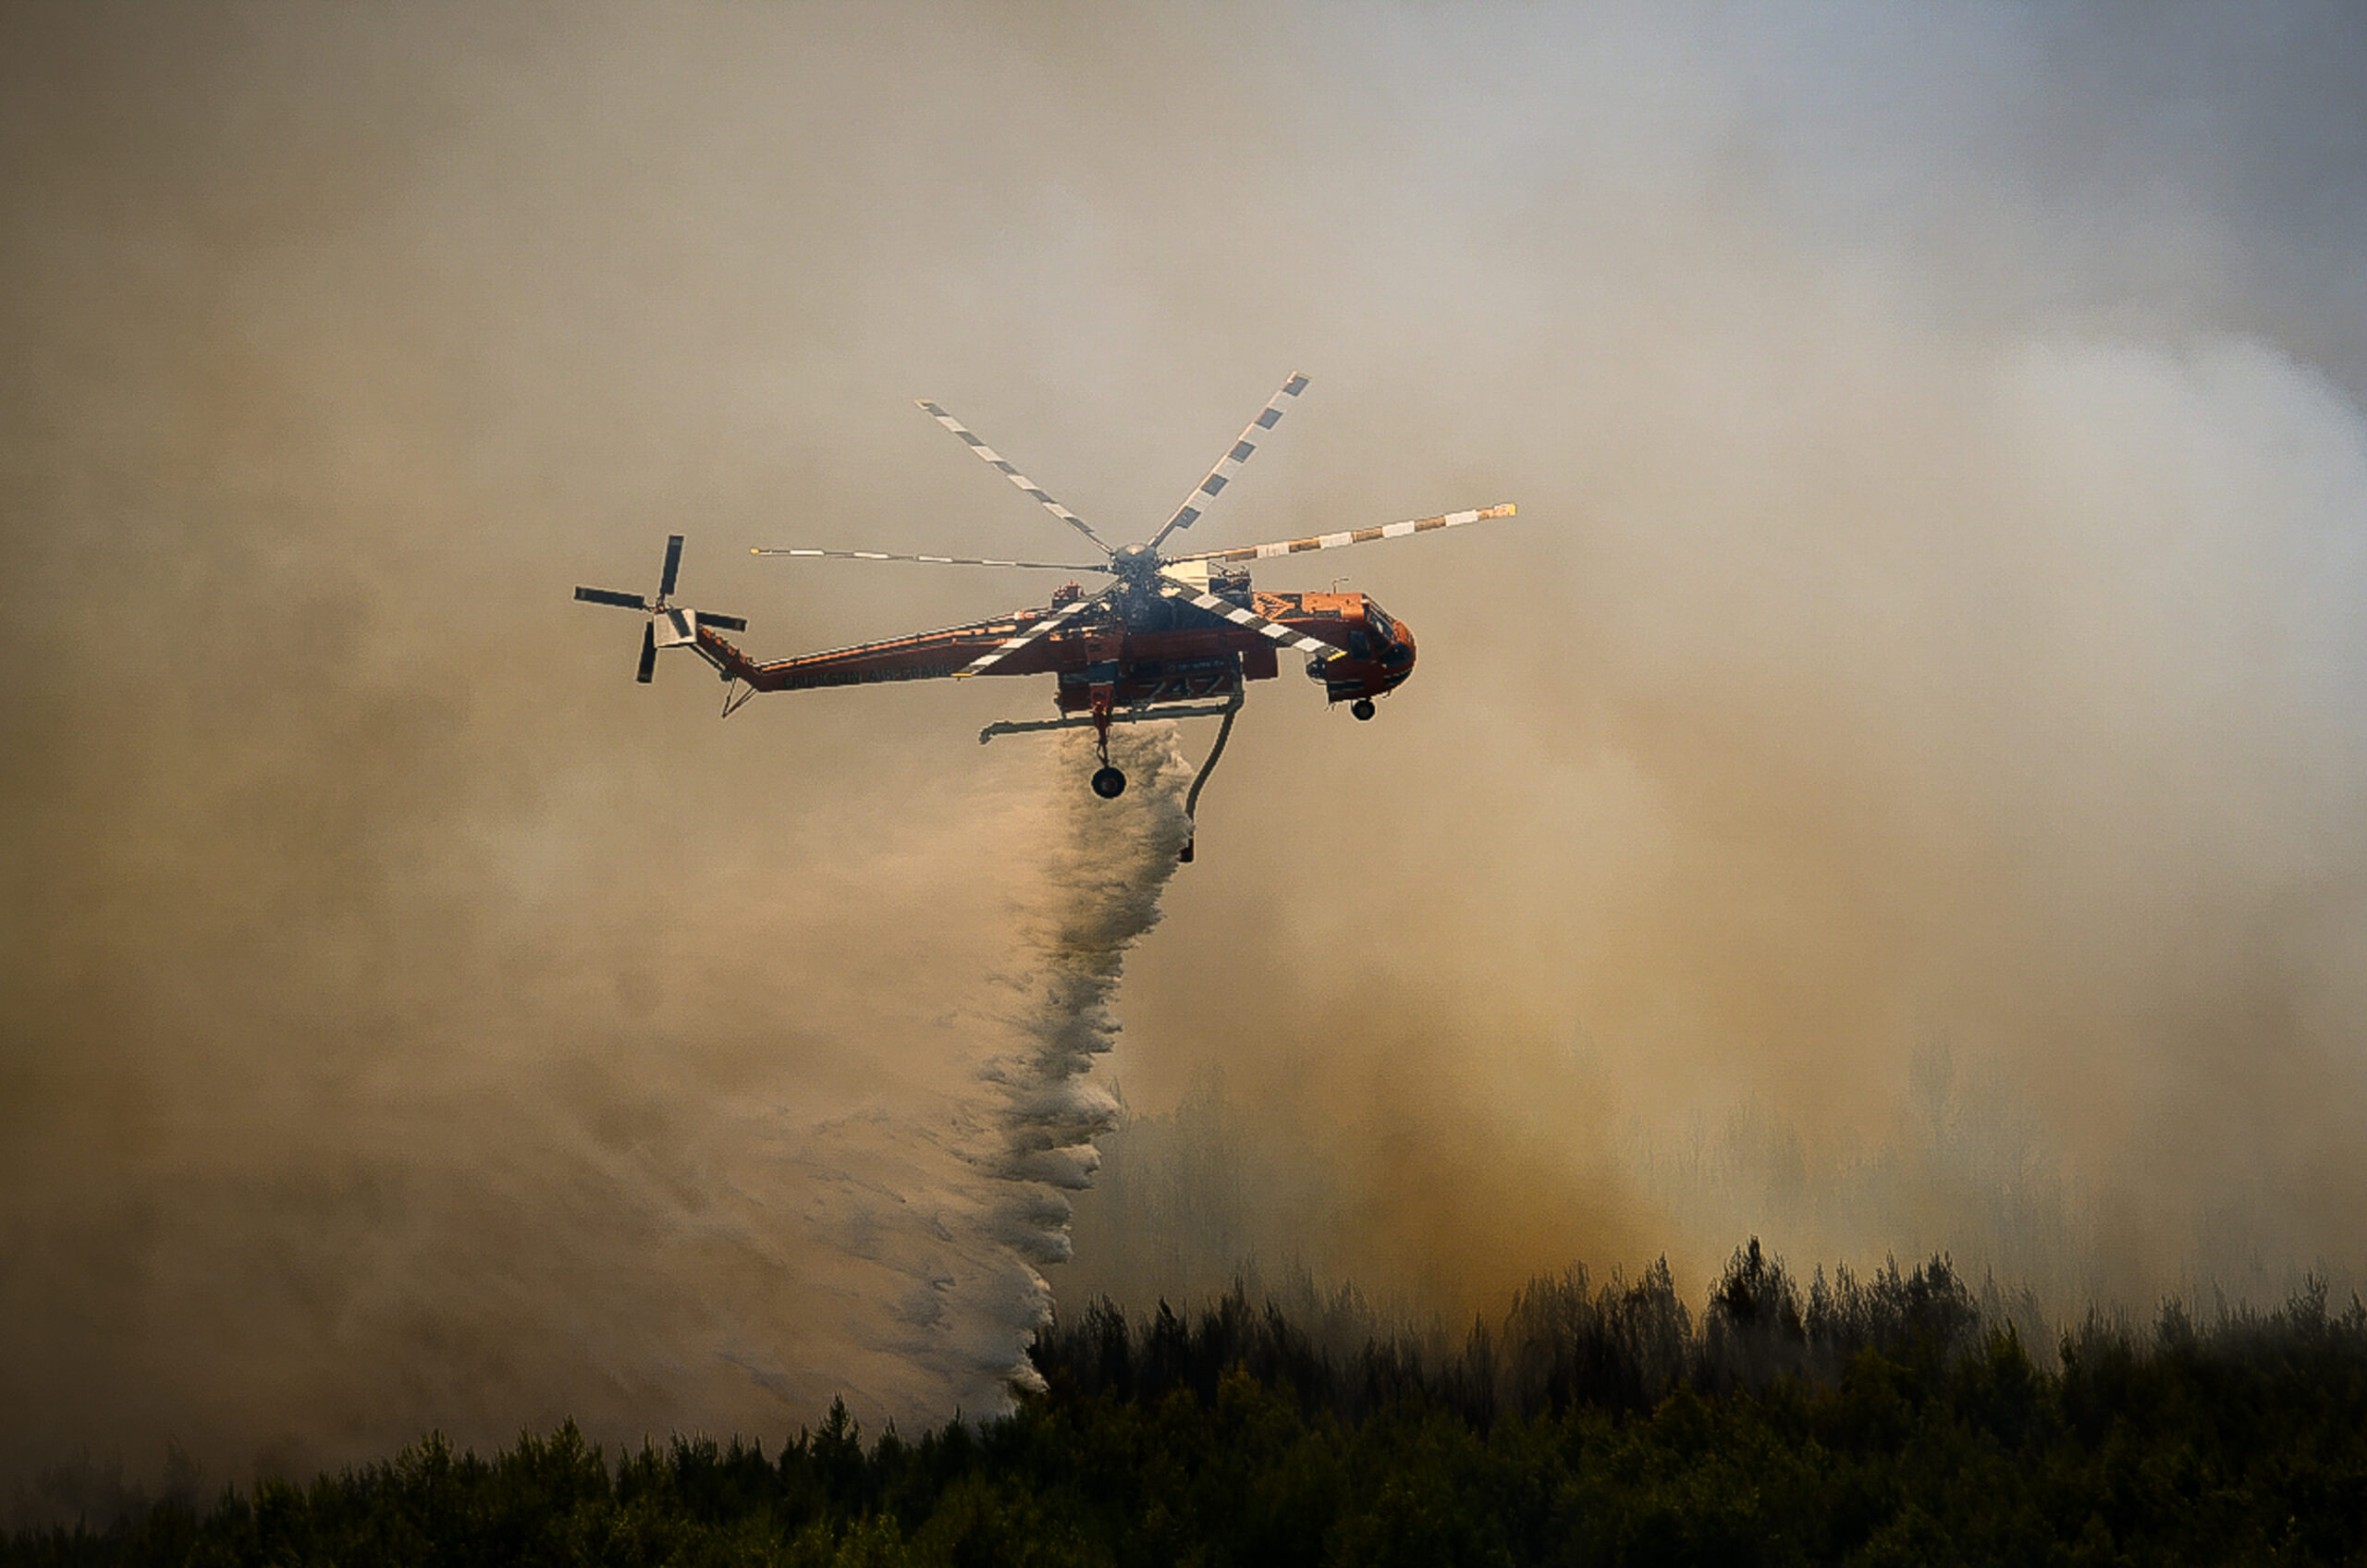 Ηλεία: Οριοθετήθηκε η φωτιά αλλά κάηκε το δάσος της Παλαιοβαρβάσαινας – Τρεις ημέρες πριν απόπειρα εμπρησμού στο ίδιο σημείο